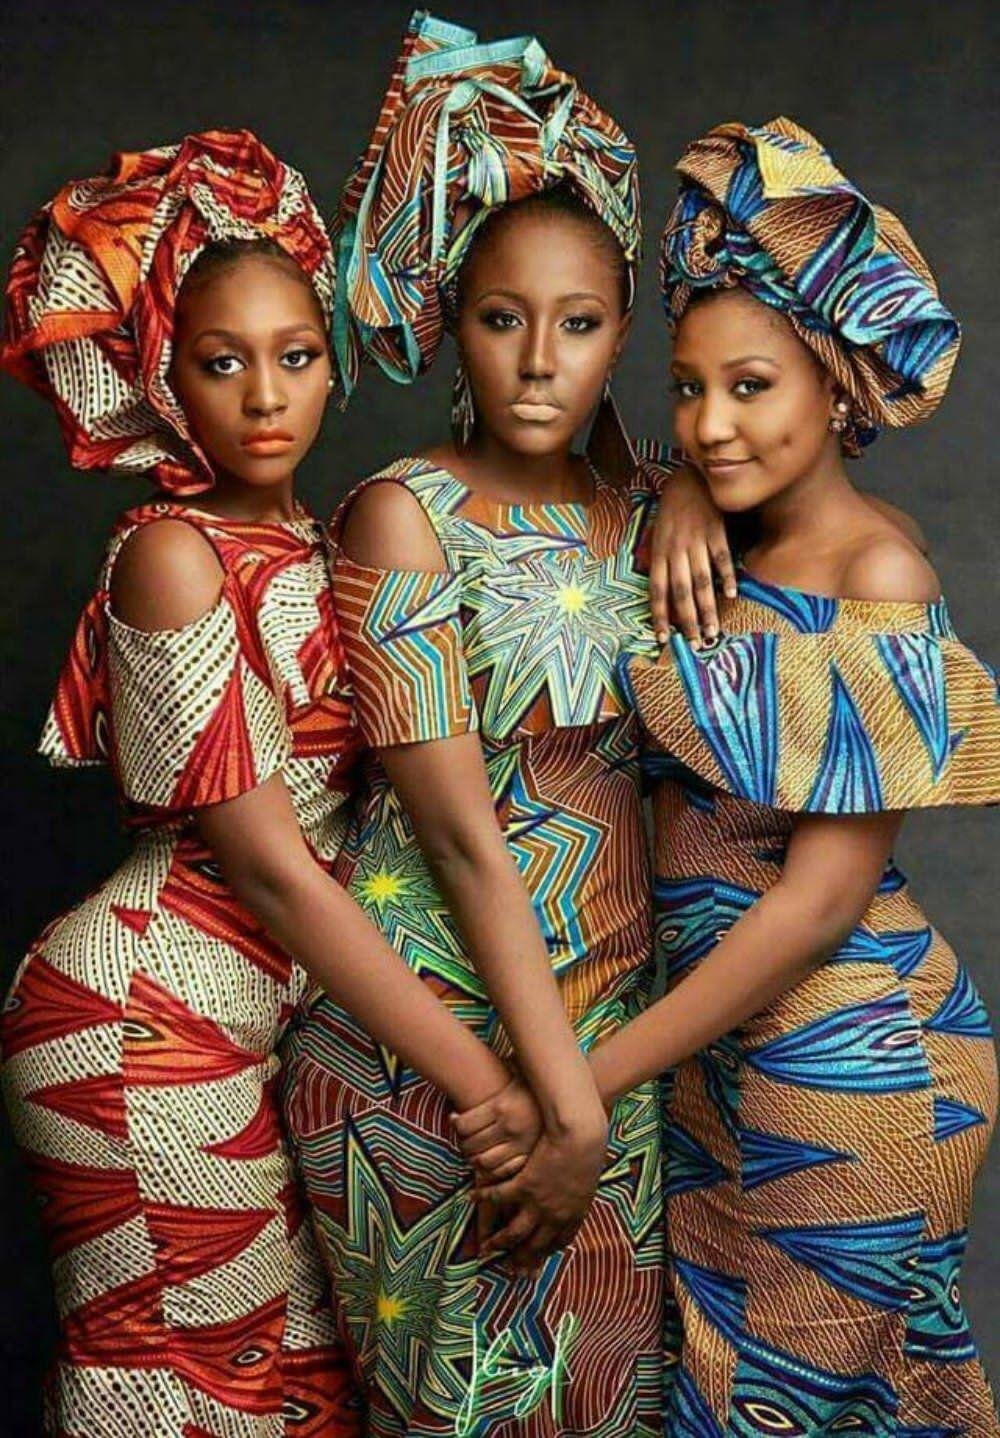 Африканский костюм. Африканский стиль в одежде. Африканский женский костюм. Костюм африканца. Одежда негритянок